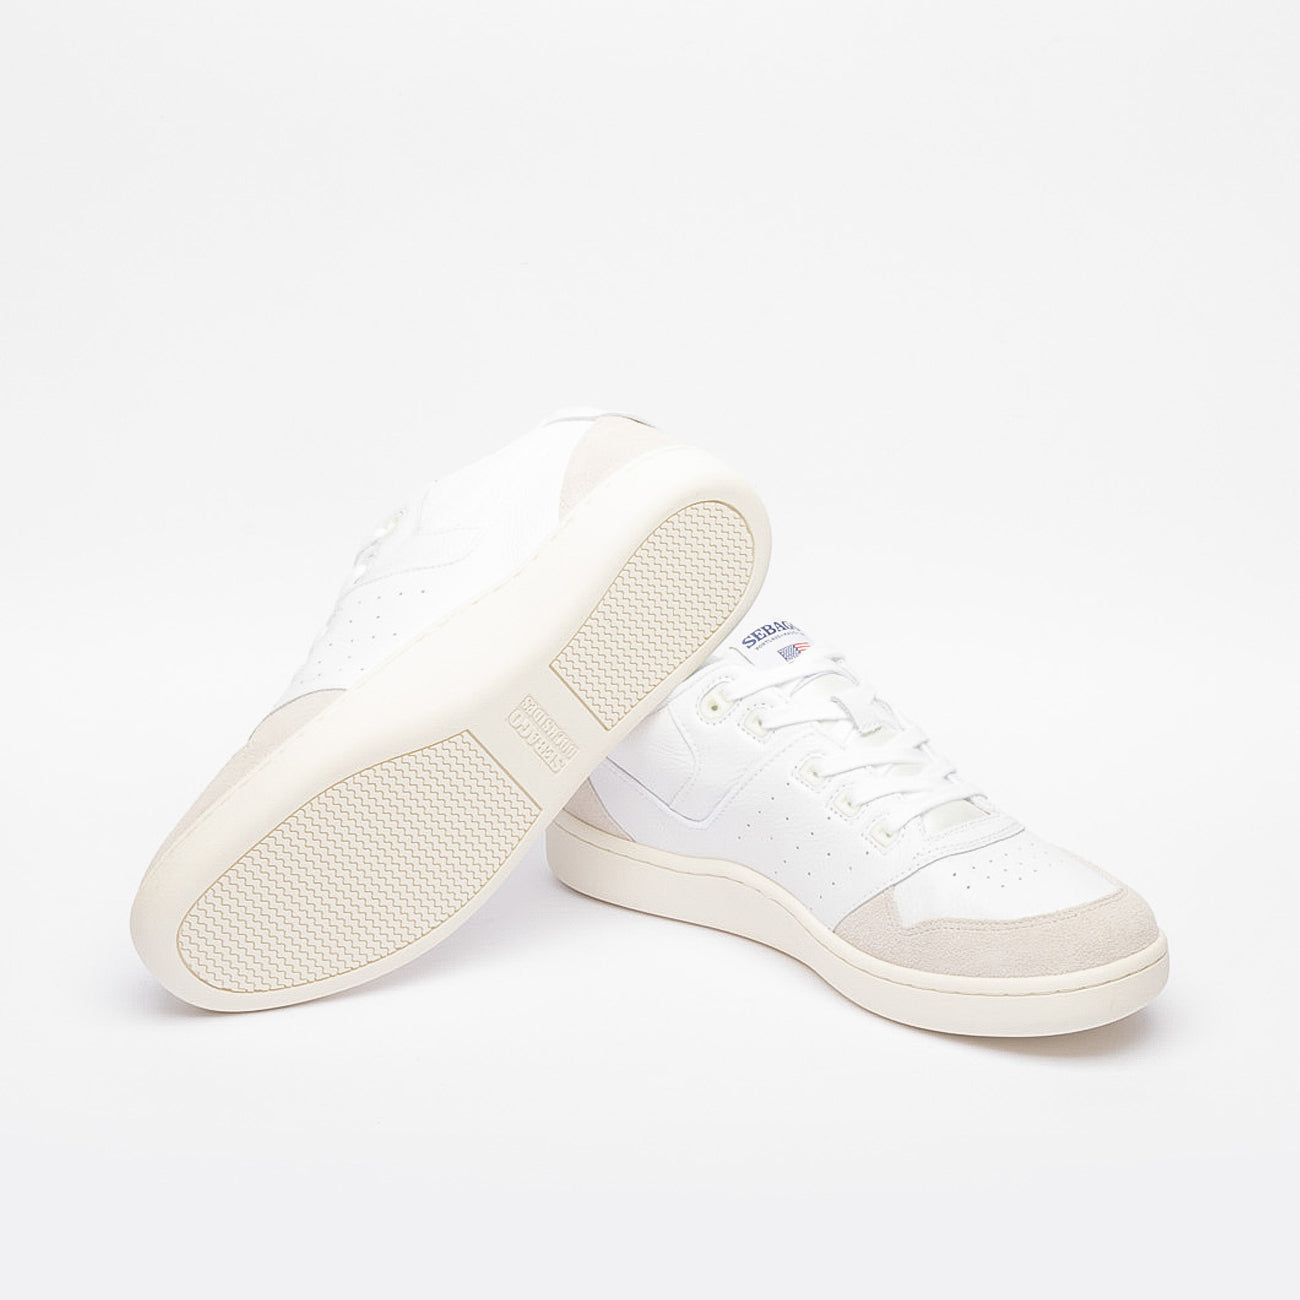 Sneaker Sebago Hurricane in pelle martellata bianca